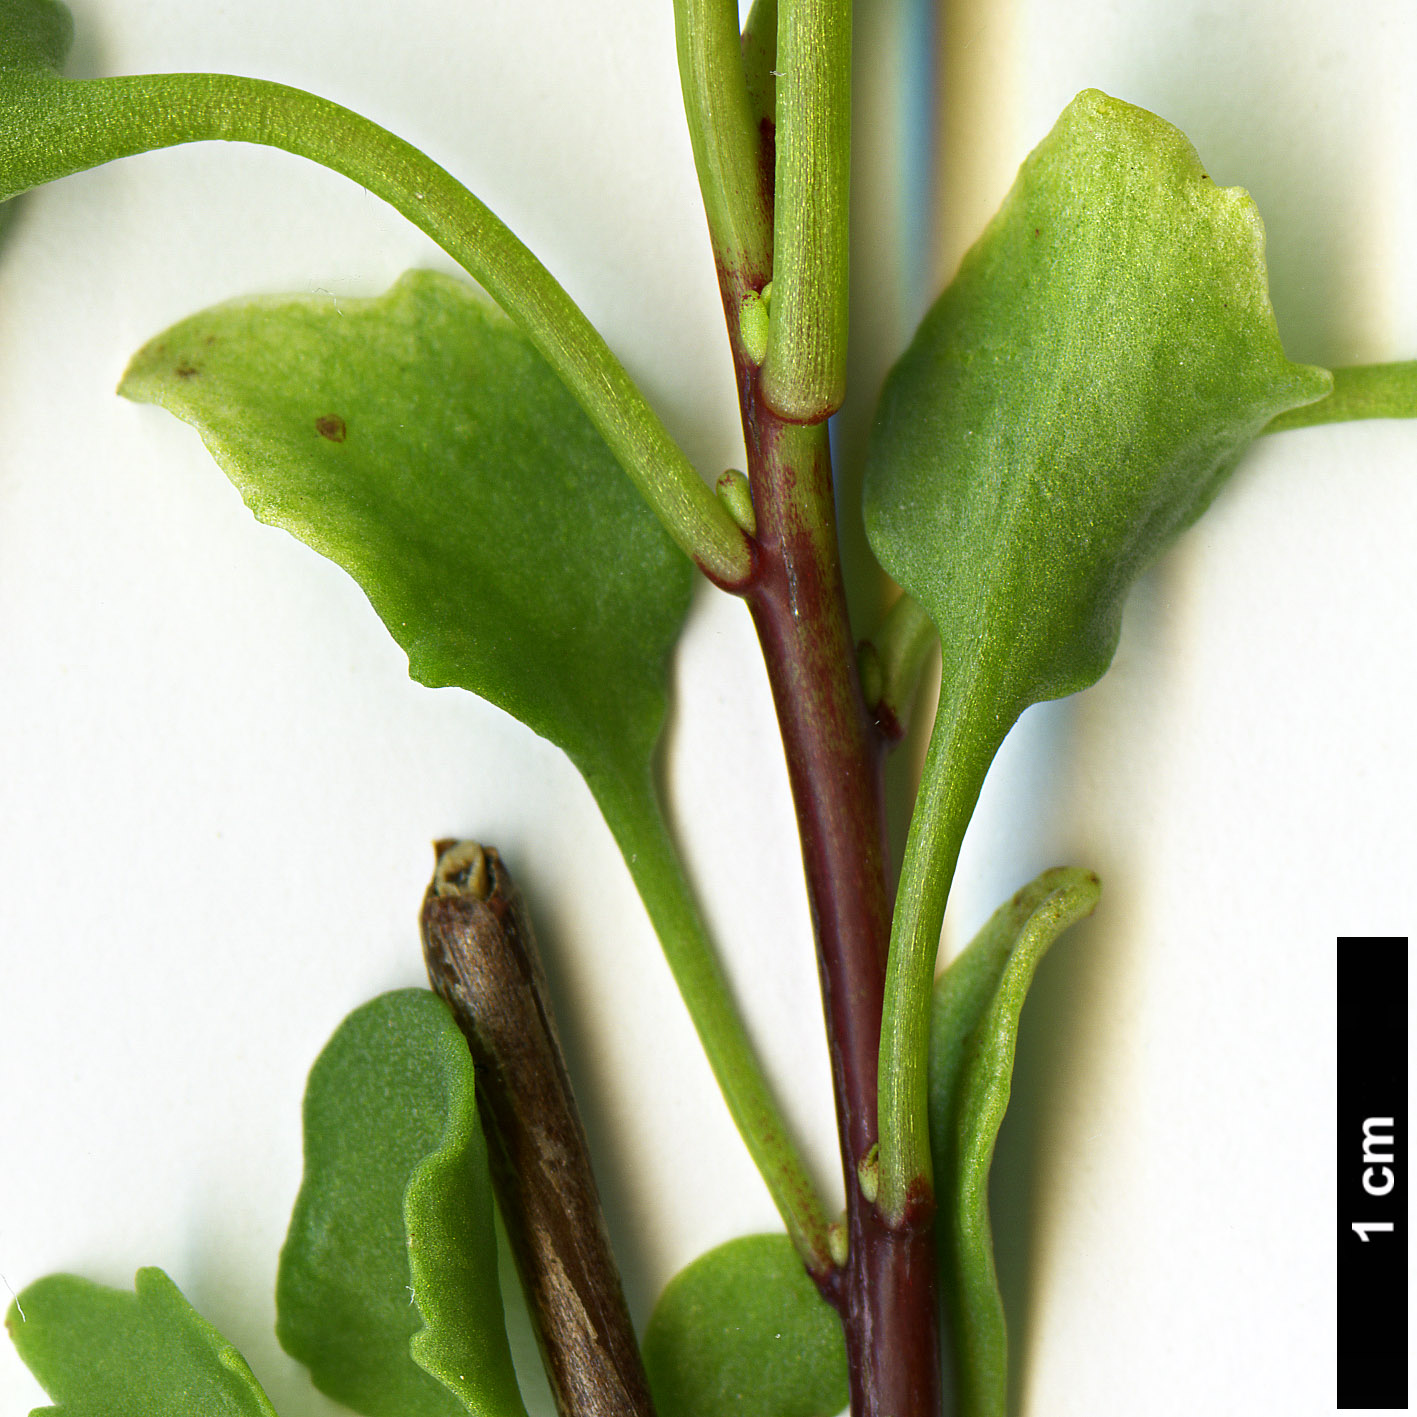 High resolution image: Family: Crassulaceae - Genus: Sedum - Taxon: populifolium